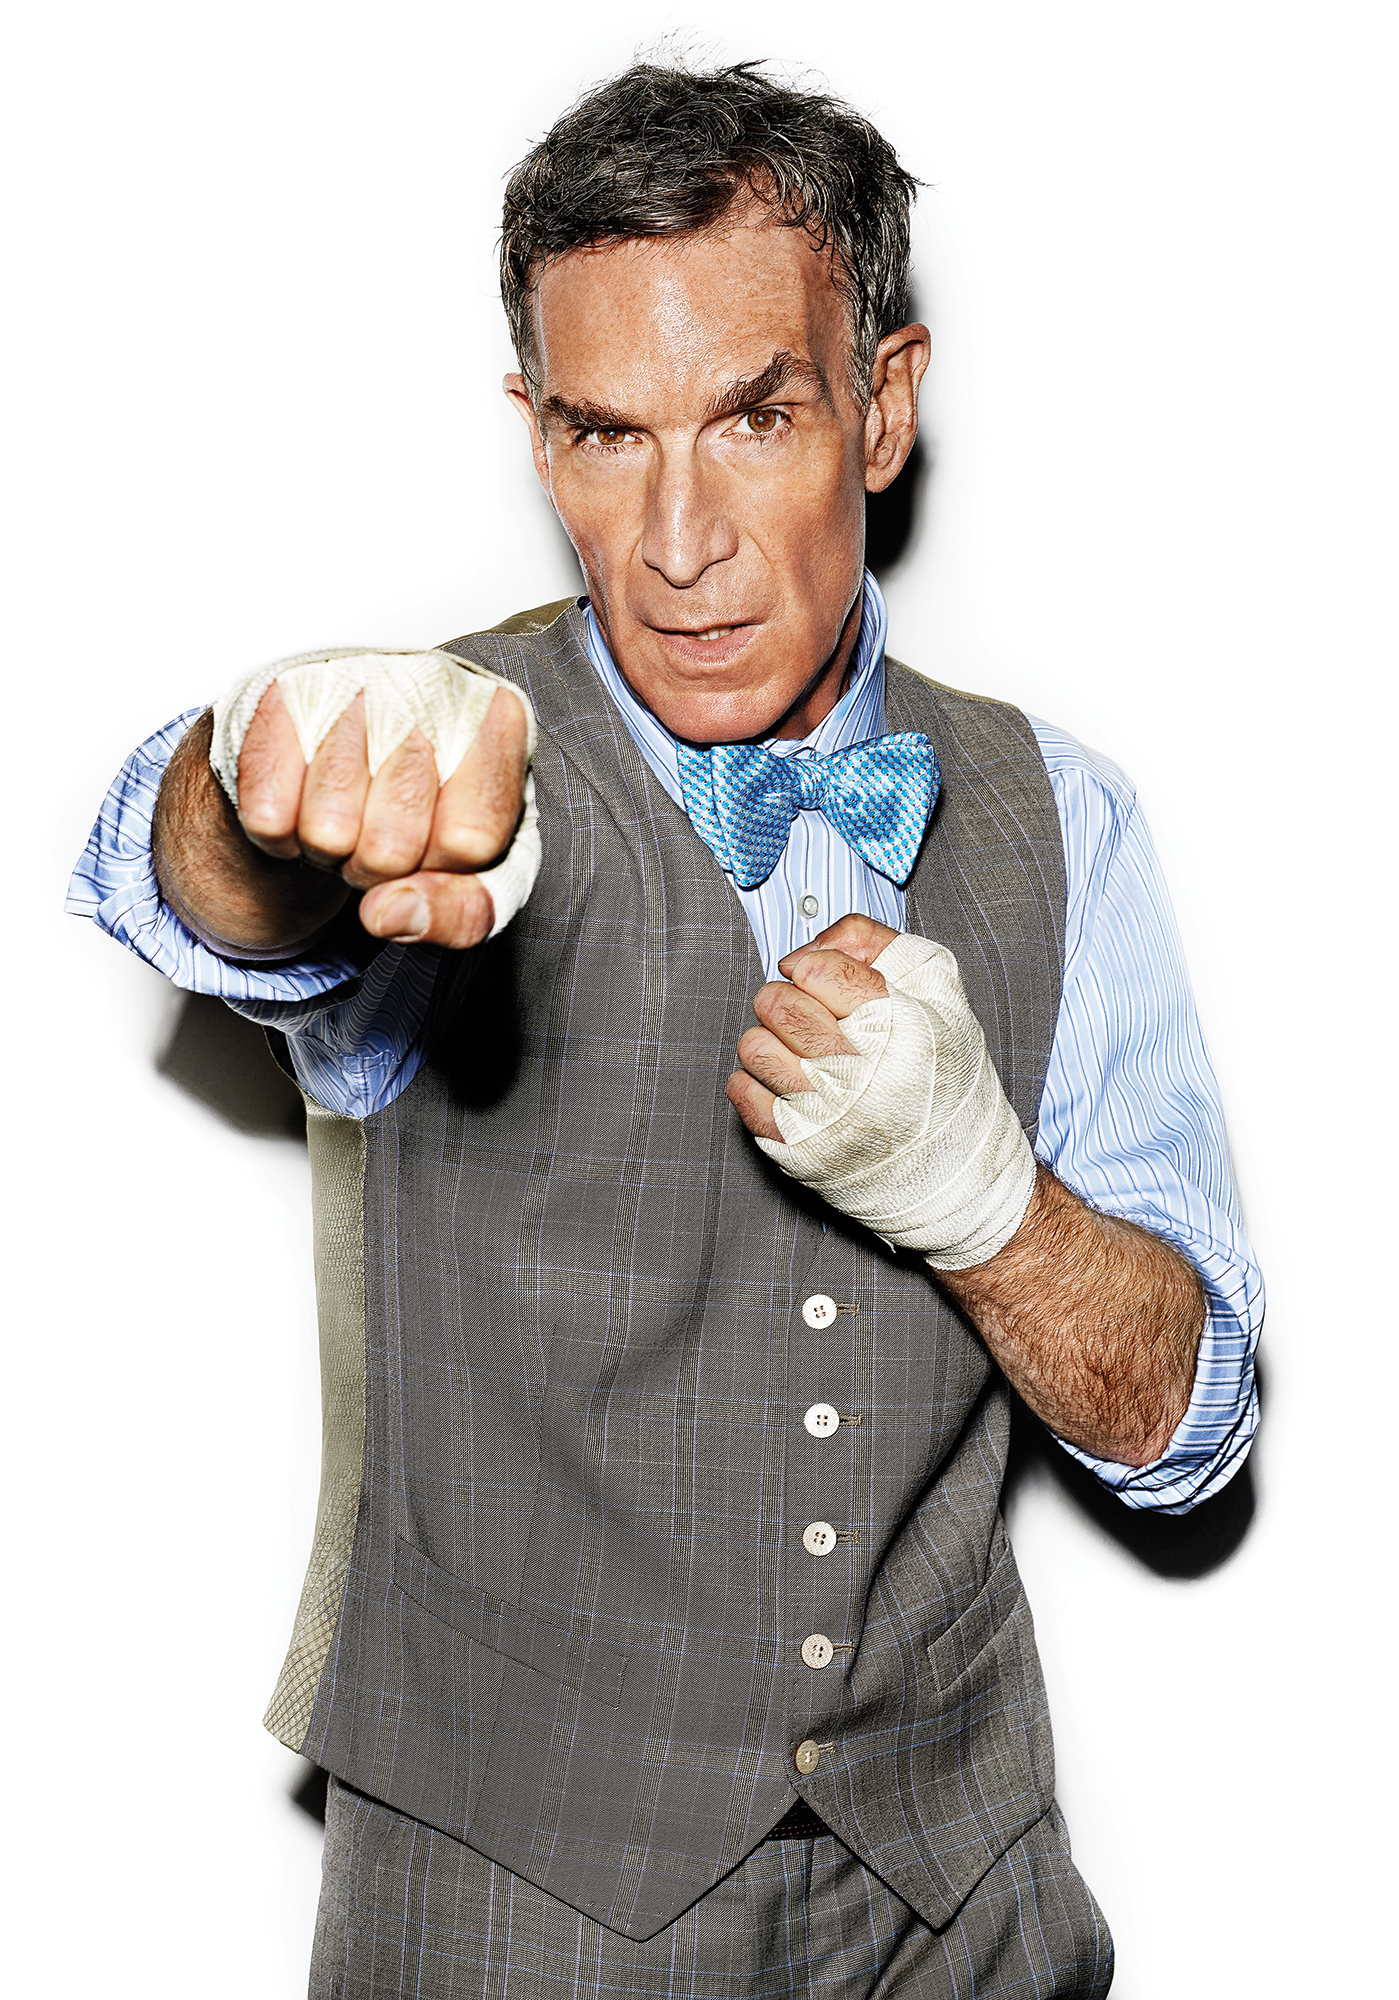 Bill Nye’s new Netflix show finally has an airdate